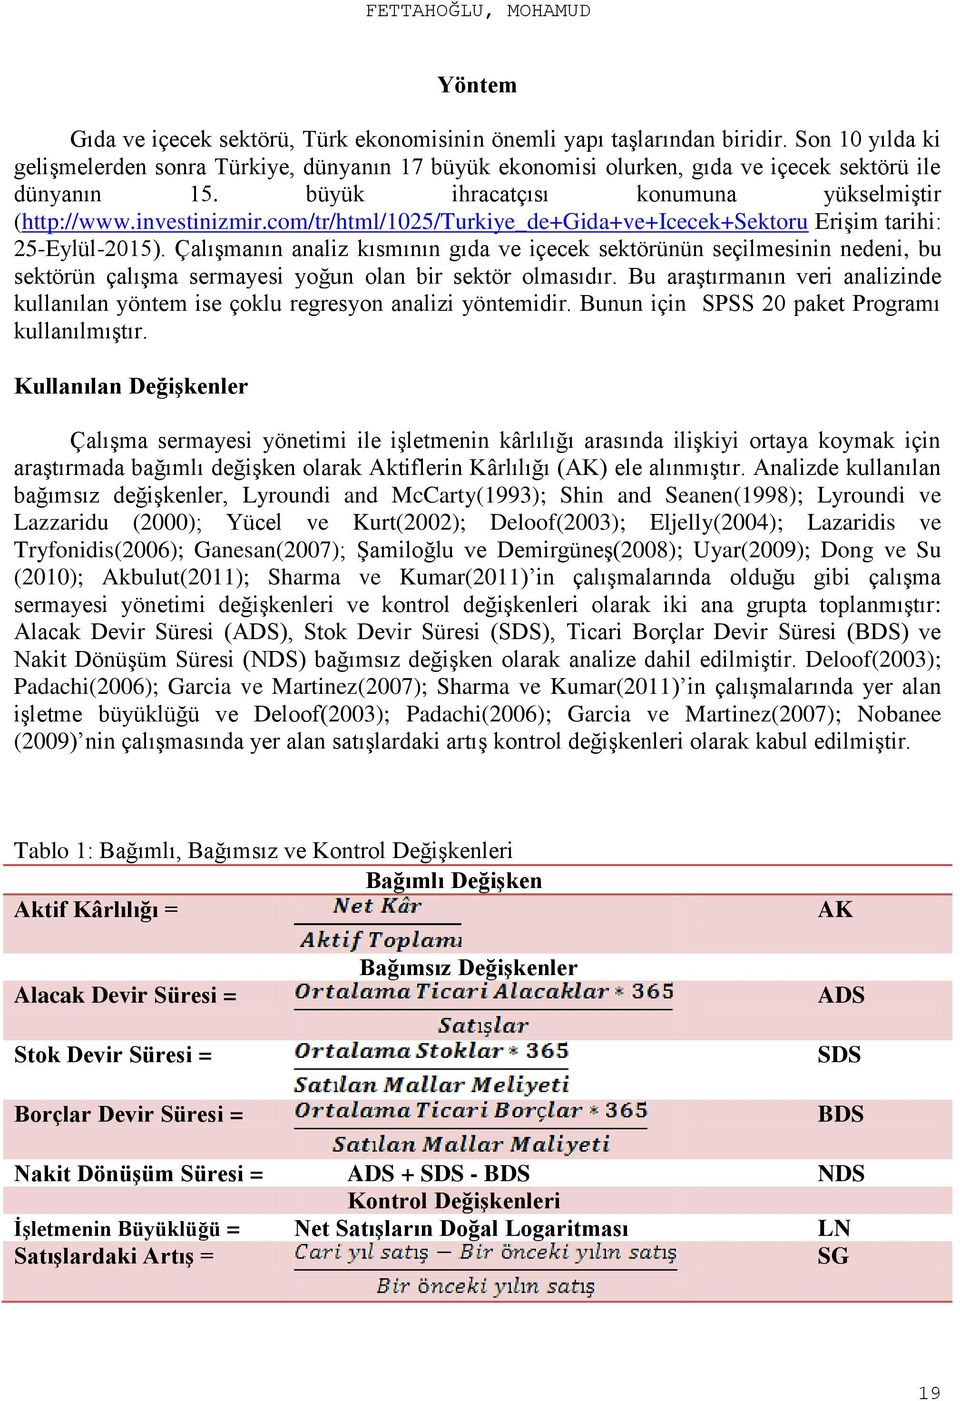 com/tr/html/1025/turkiye_de+gida+ve+icecek+sektoru Erişim tarihi: 25-Eylül-2015).